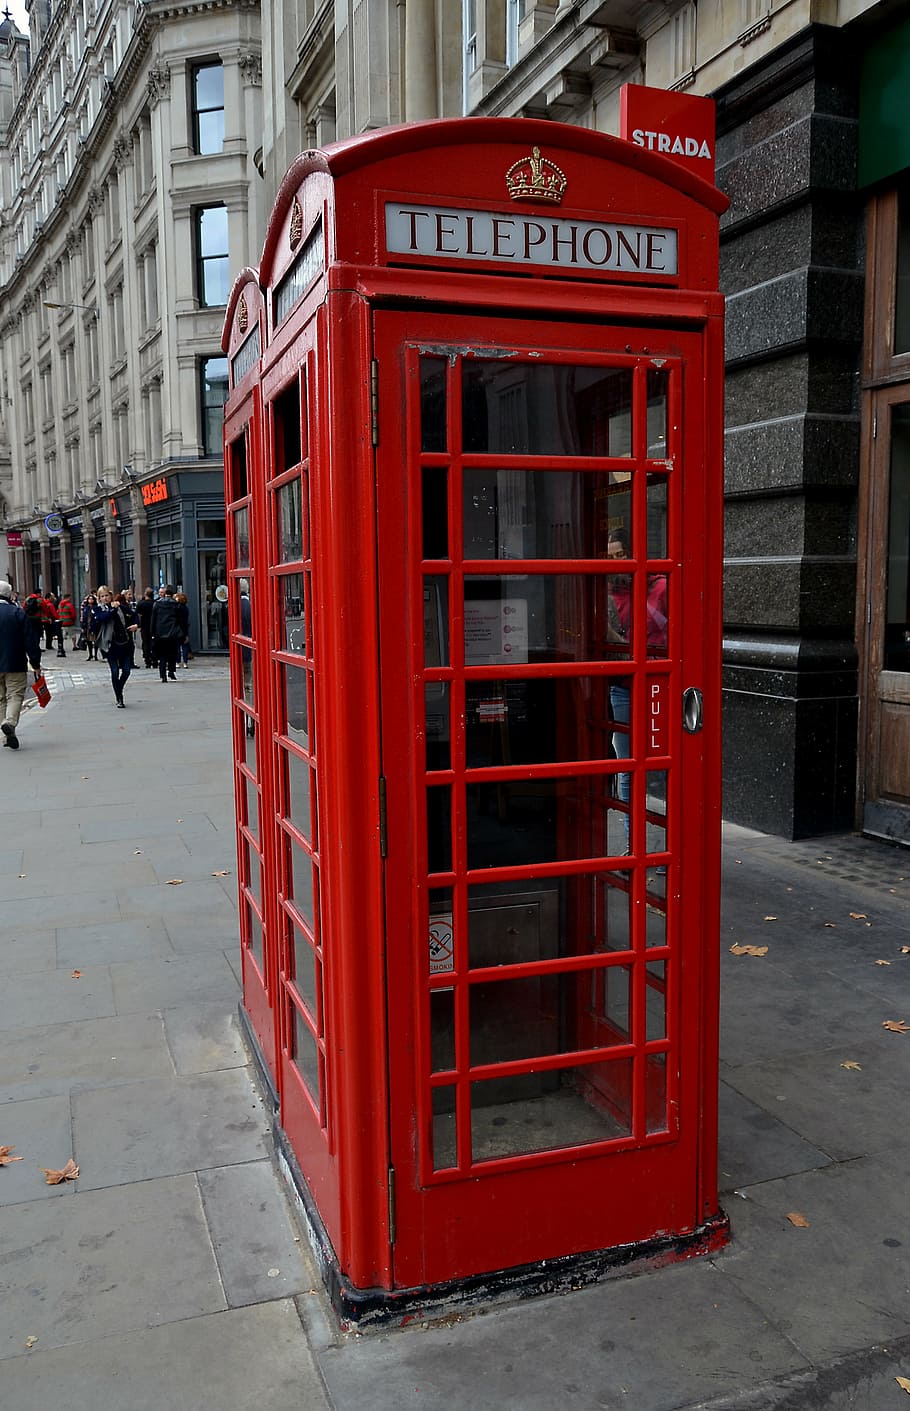 bilik telepon, merah, london, inggris, arsitektur, telepon, komunikasi, kota, struktur yang dibangun, eksterior bangunan